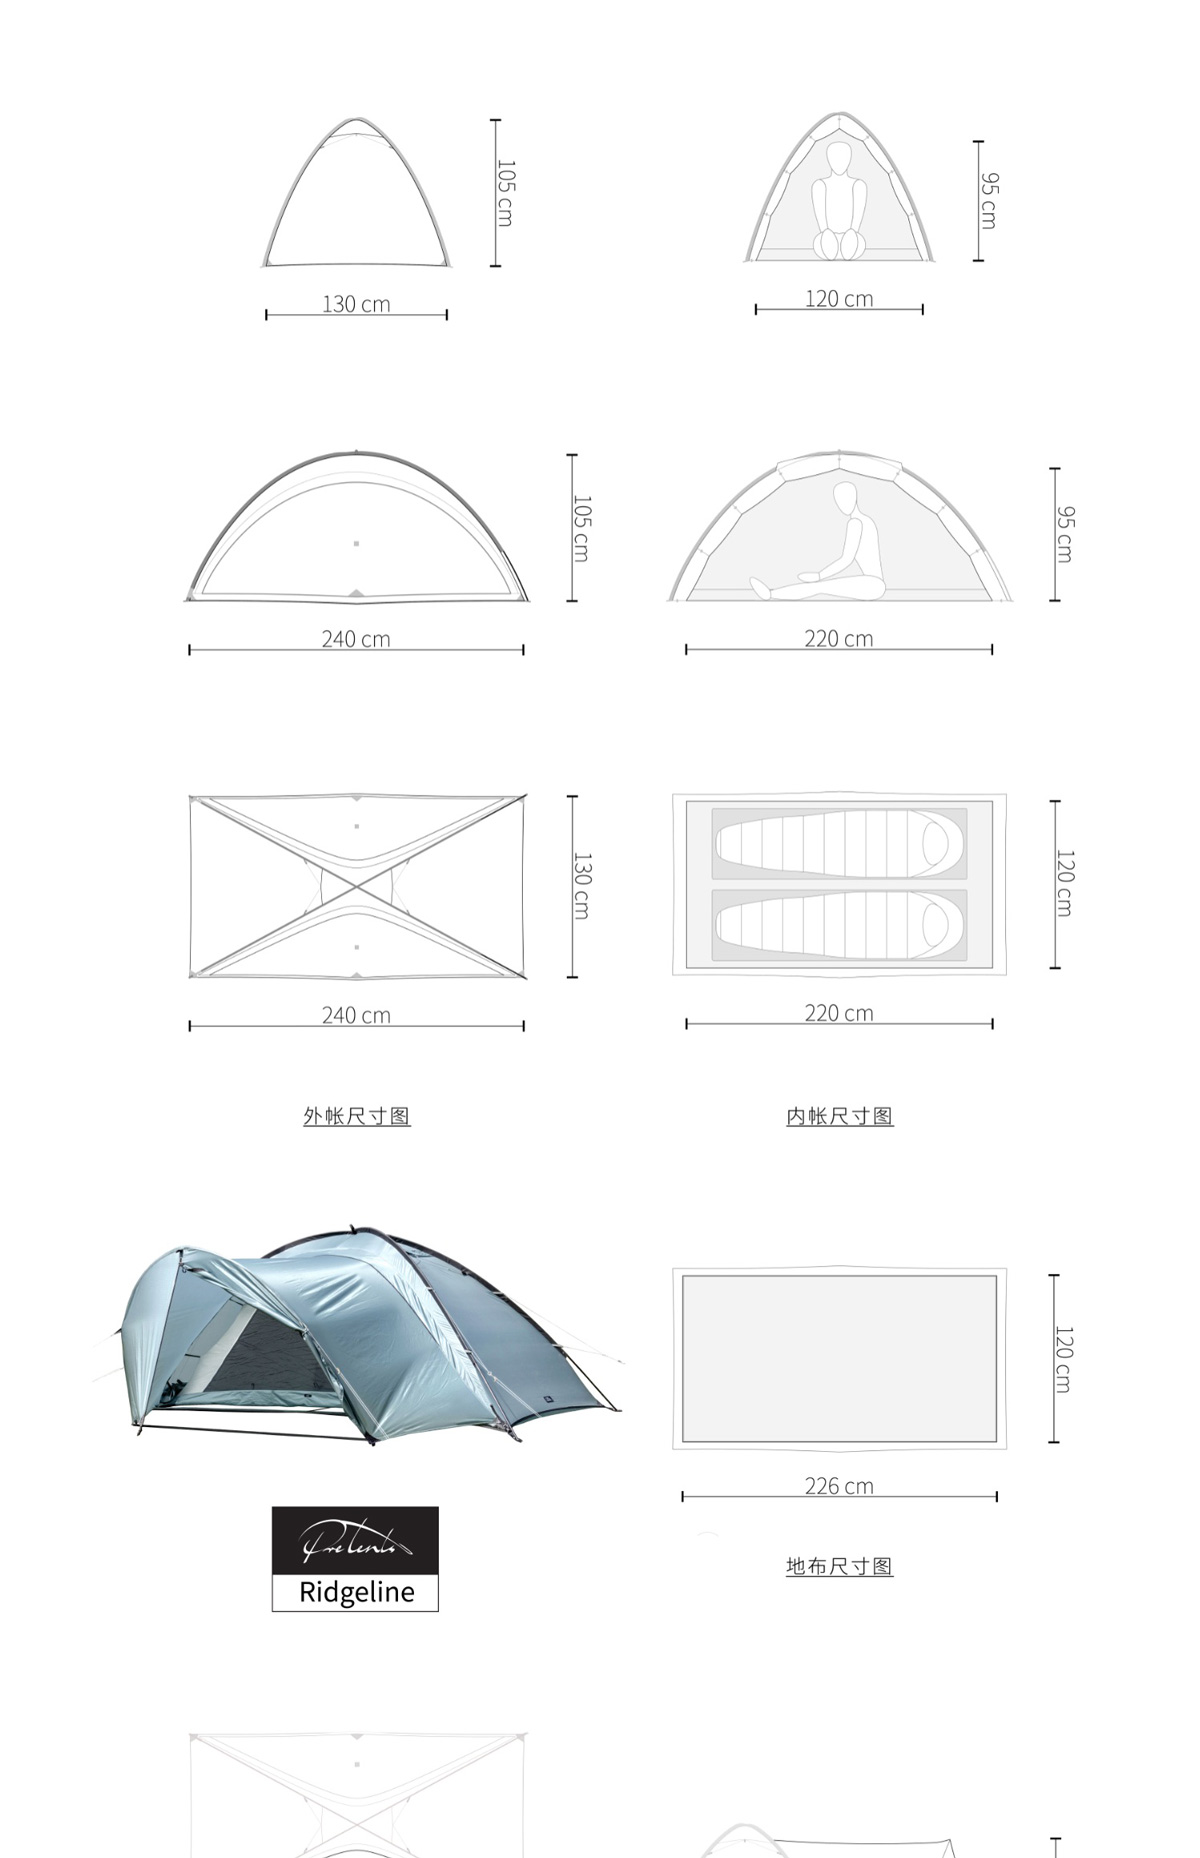 PreTents Ridgeline – Pre Tents